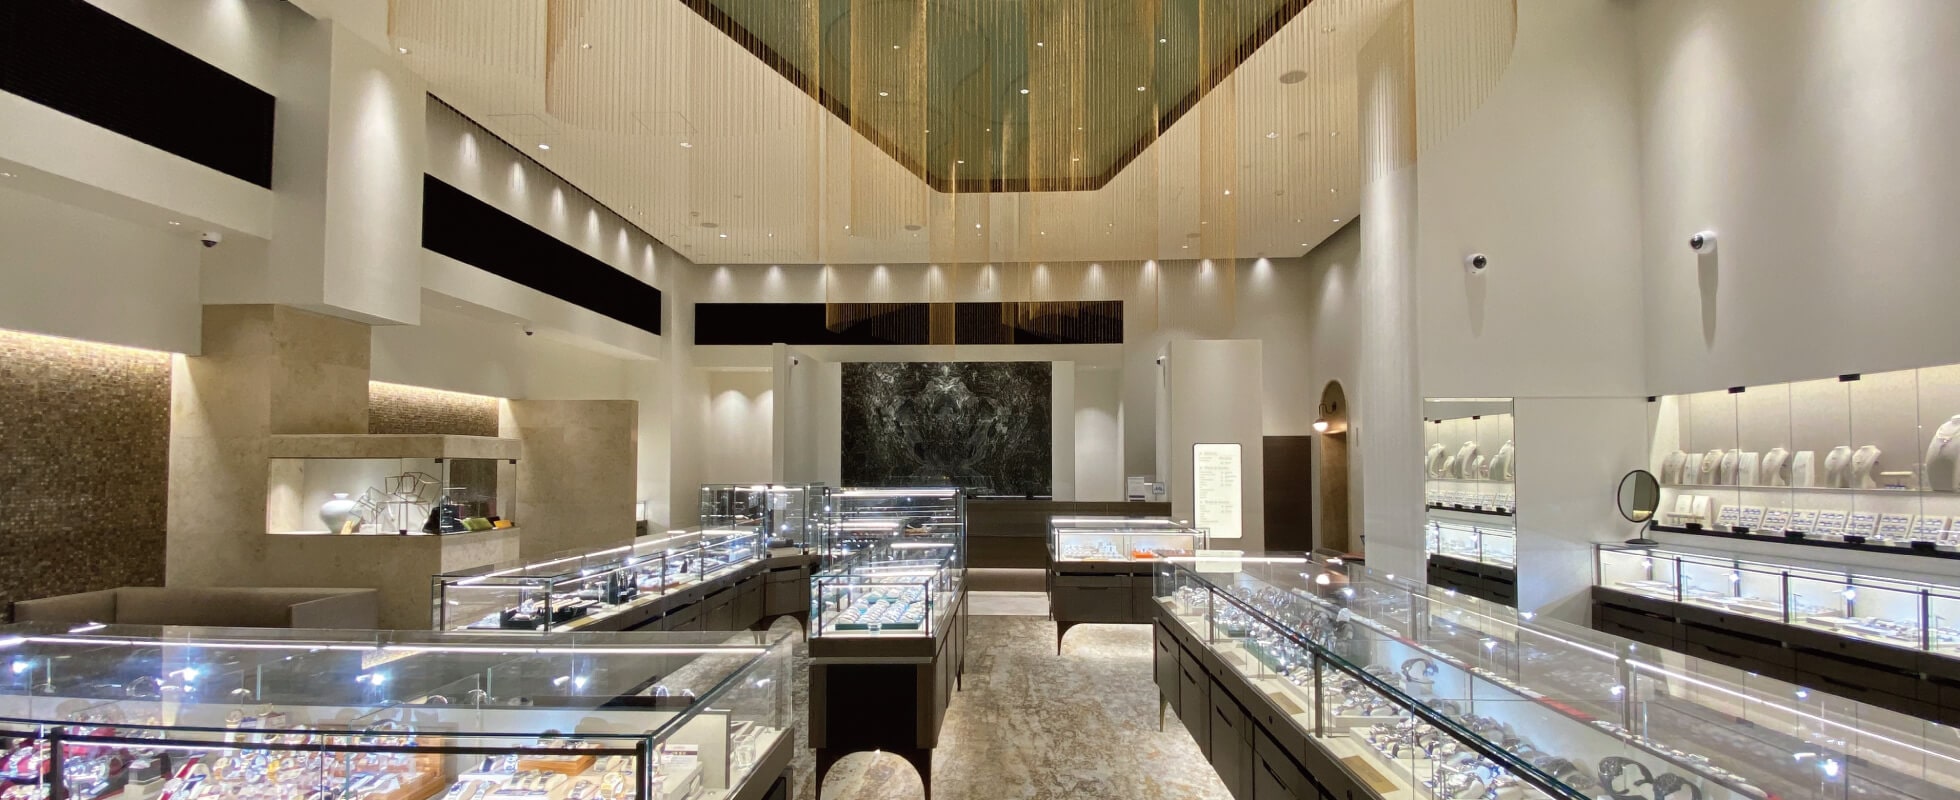 福岡で創業し40年以上に渡り宝飾品や腕時計などの最高級品を取り扱っています。東京・大阪・名古屋等の主要都市を中心に全国で店舗を展開しています。